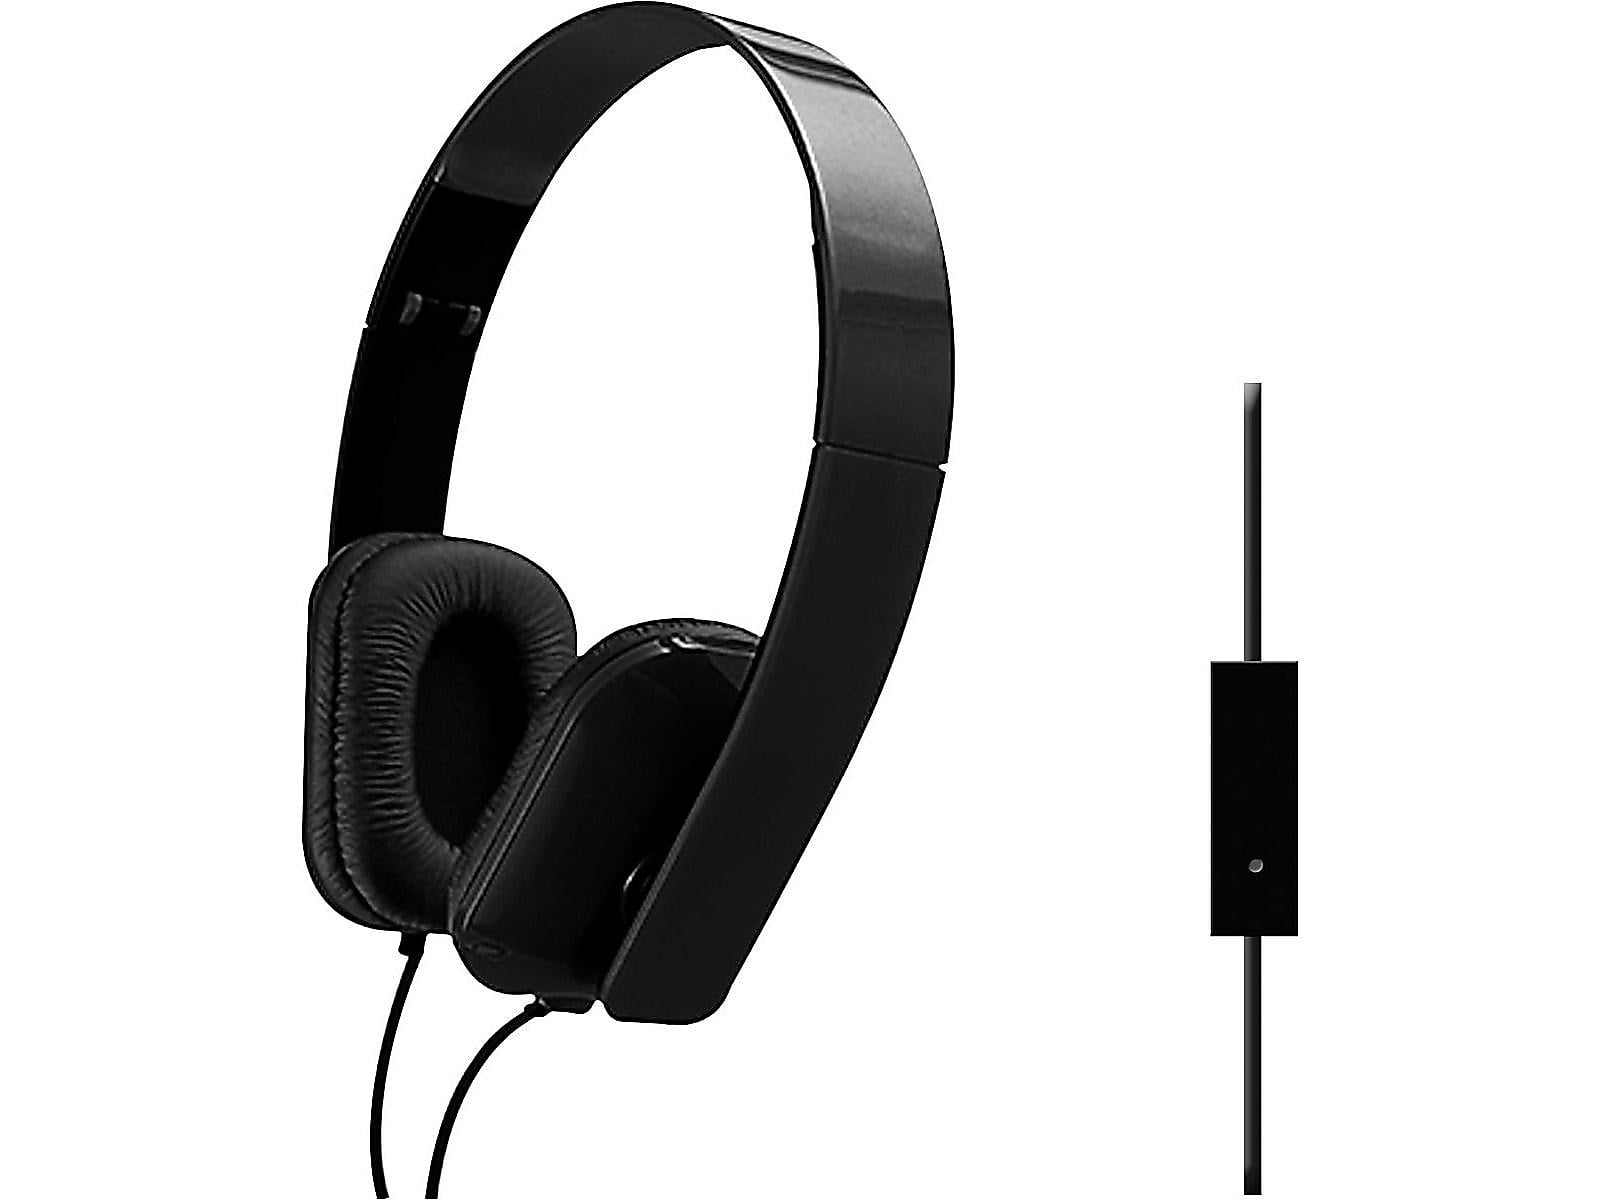 Sentry Folding Headphones Black (DLX21) 1662778 - Walmart.com - Walmart.com